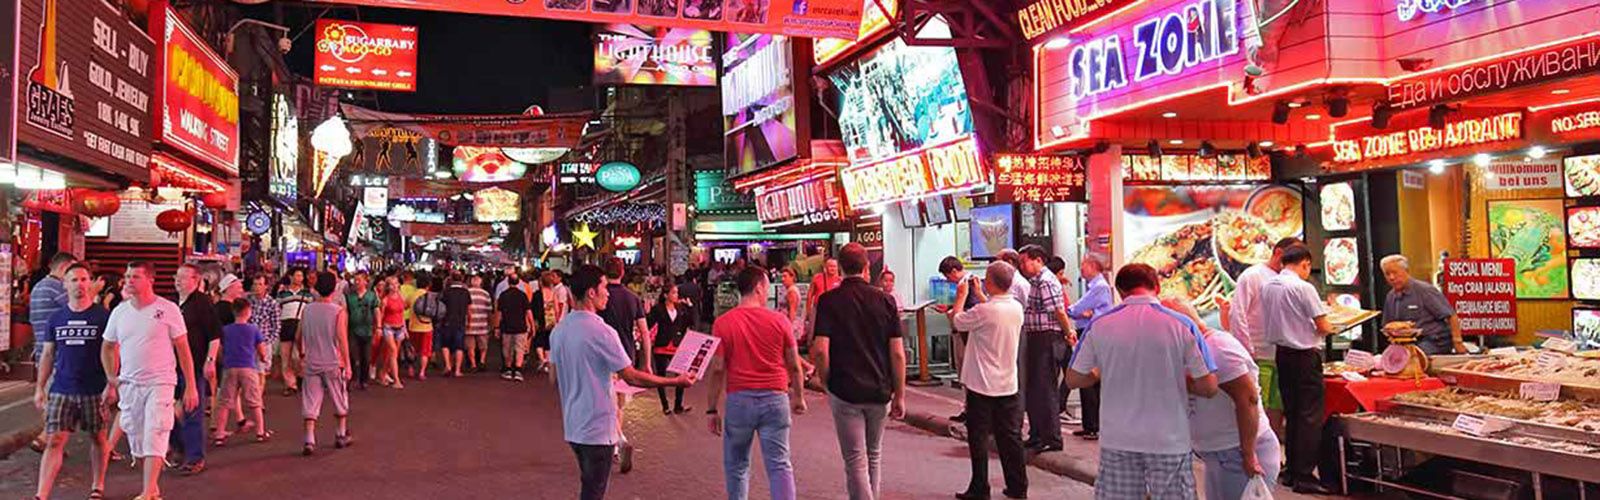 Pattaya Travel Guide | Asianventure Tours